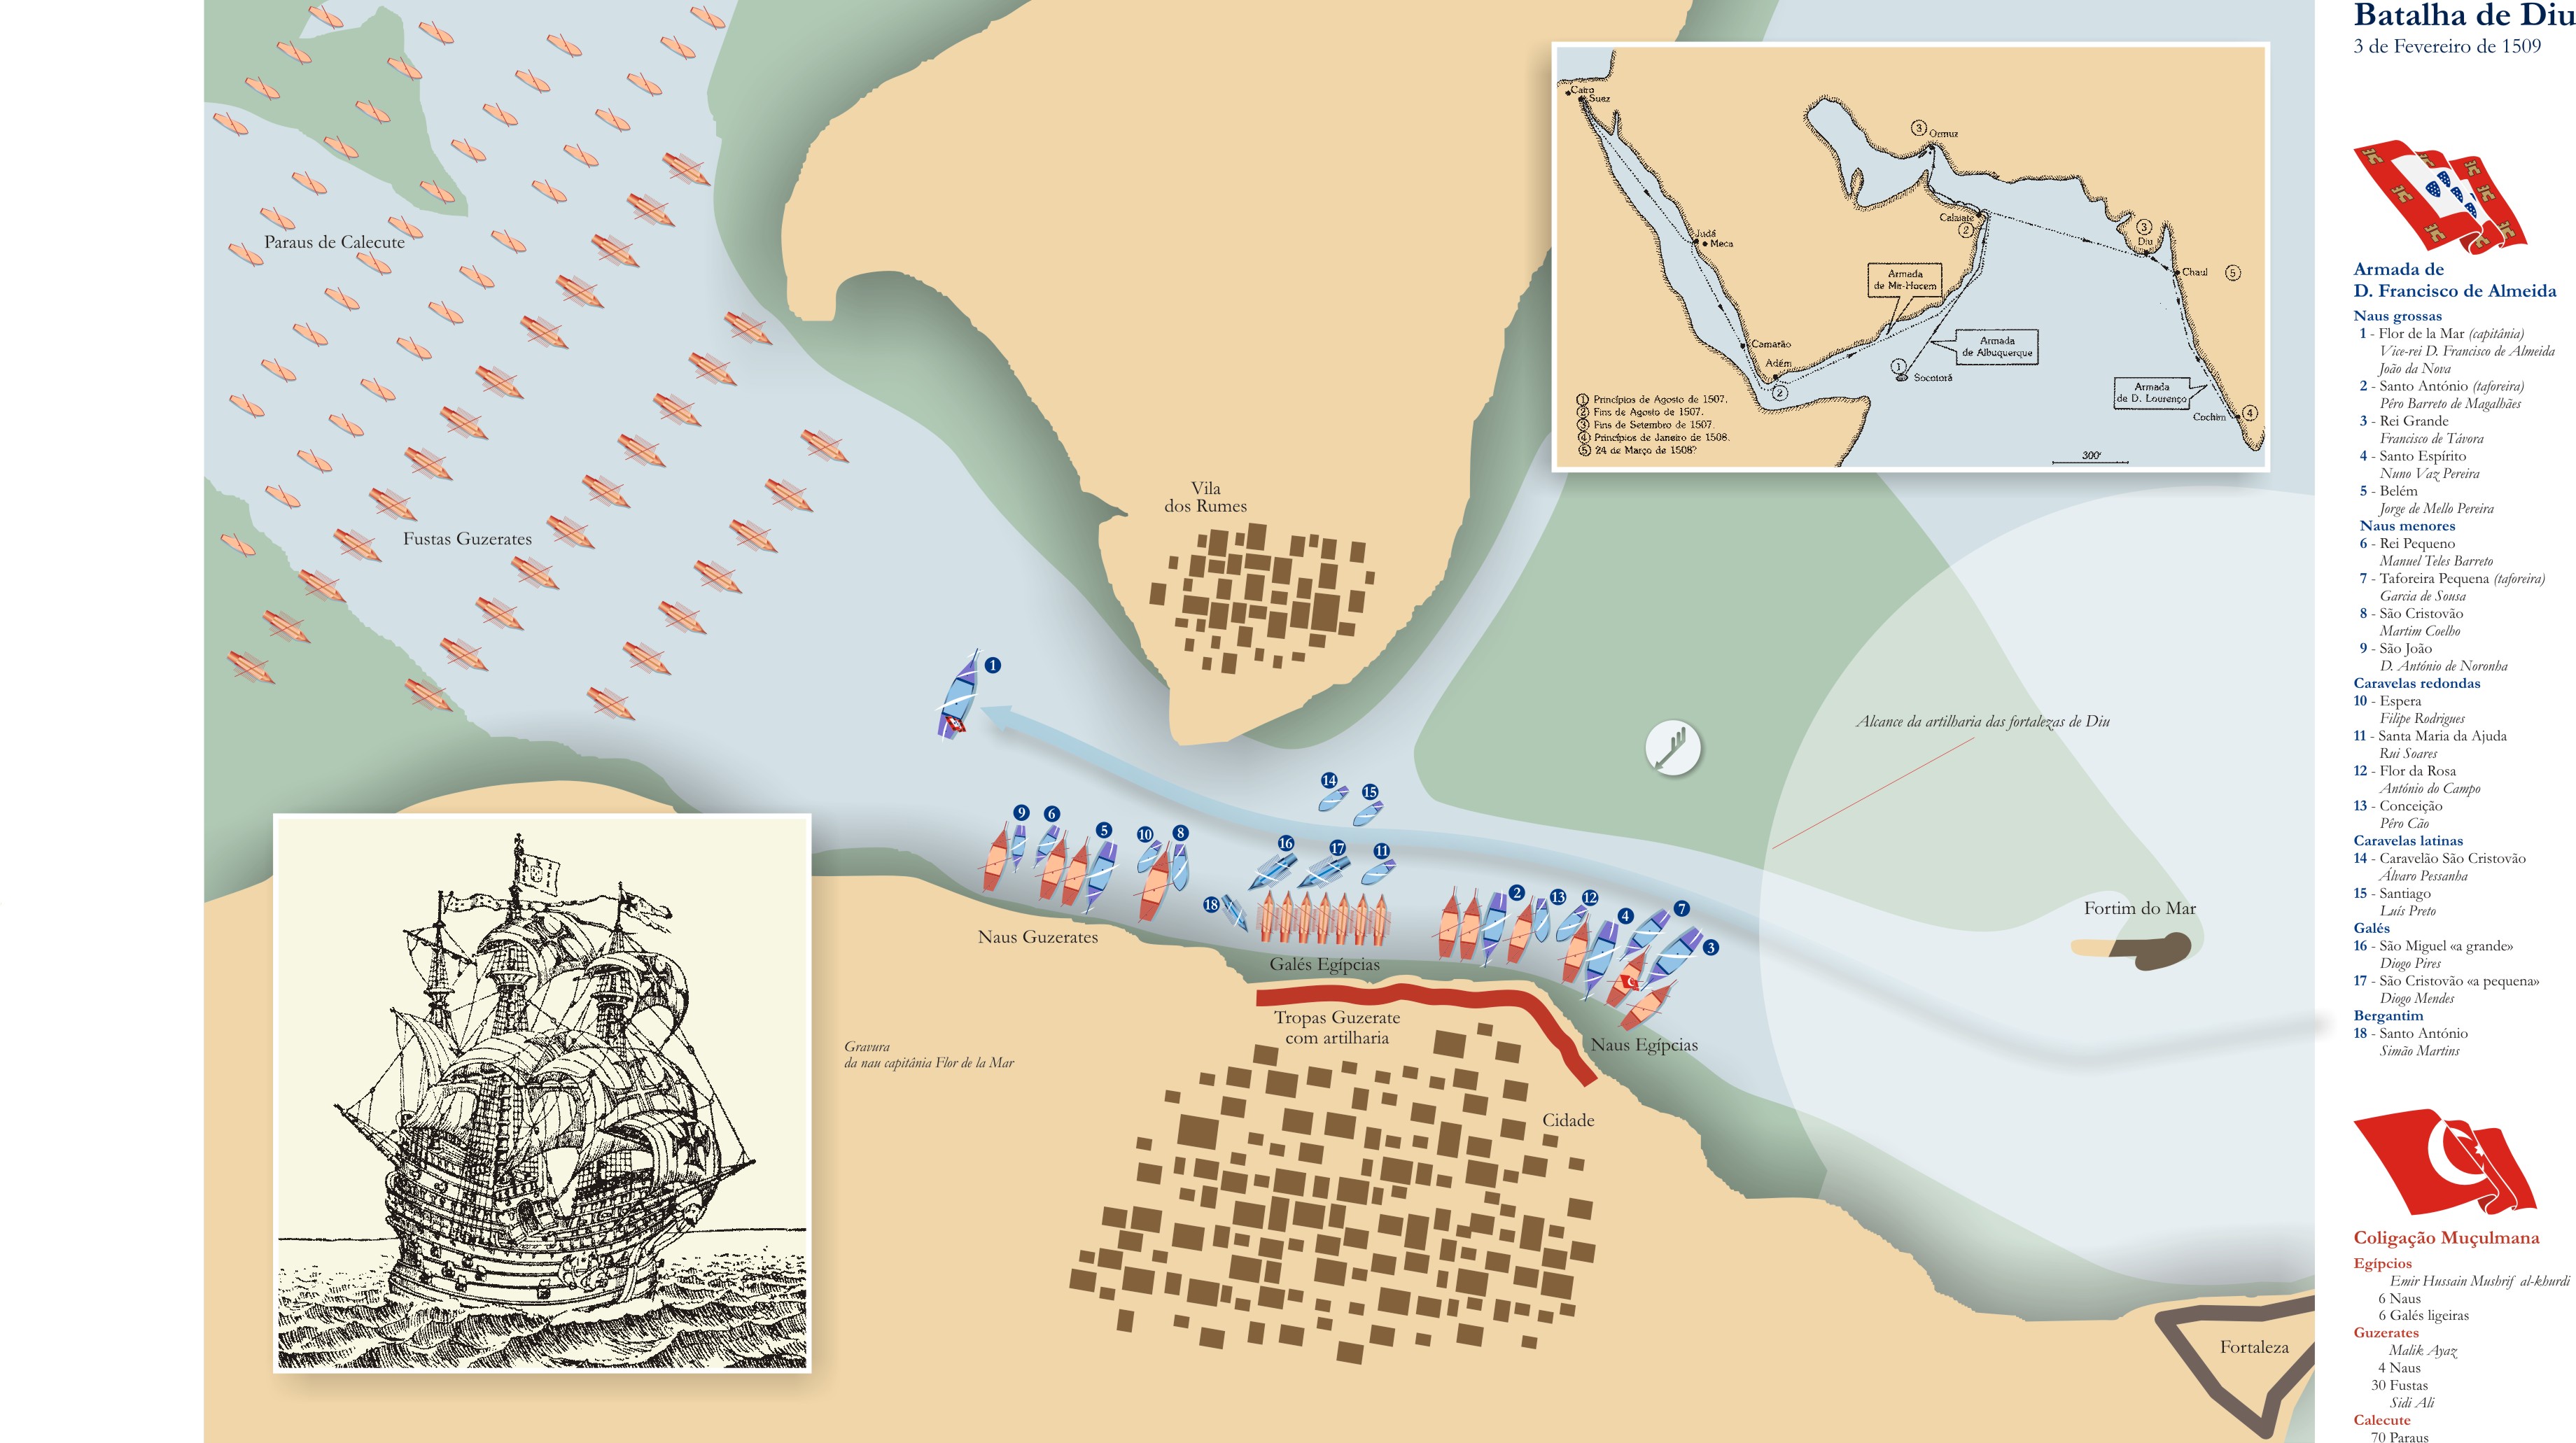 Figura 2 - Gráfico da Batalha de DIU 1509.jpg